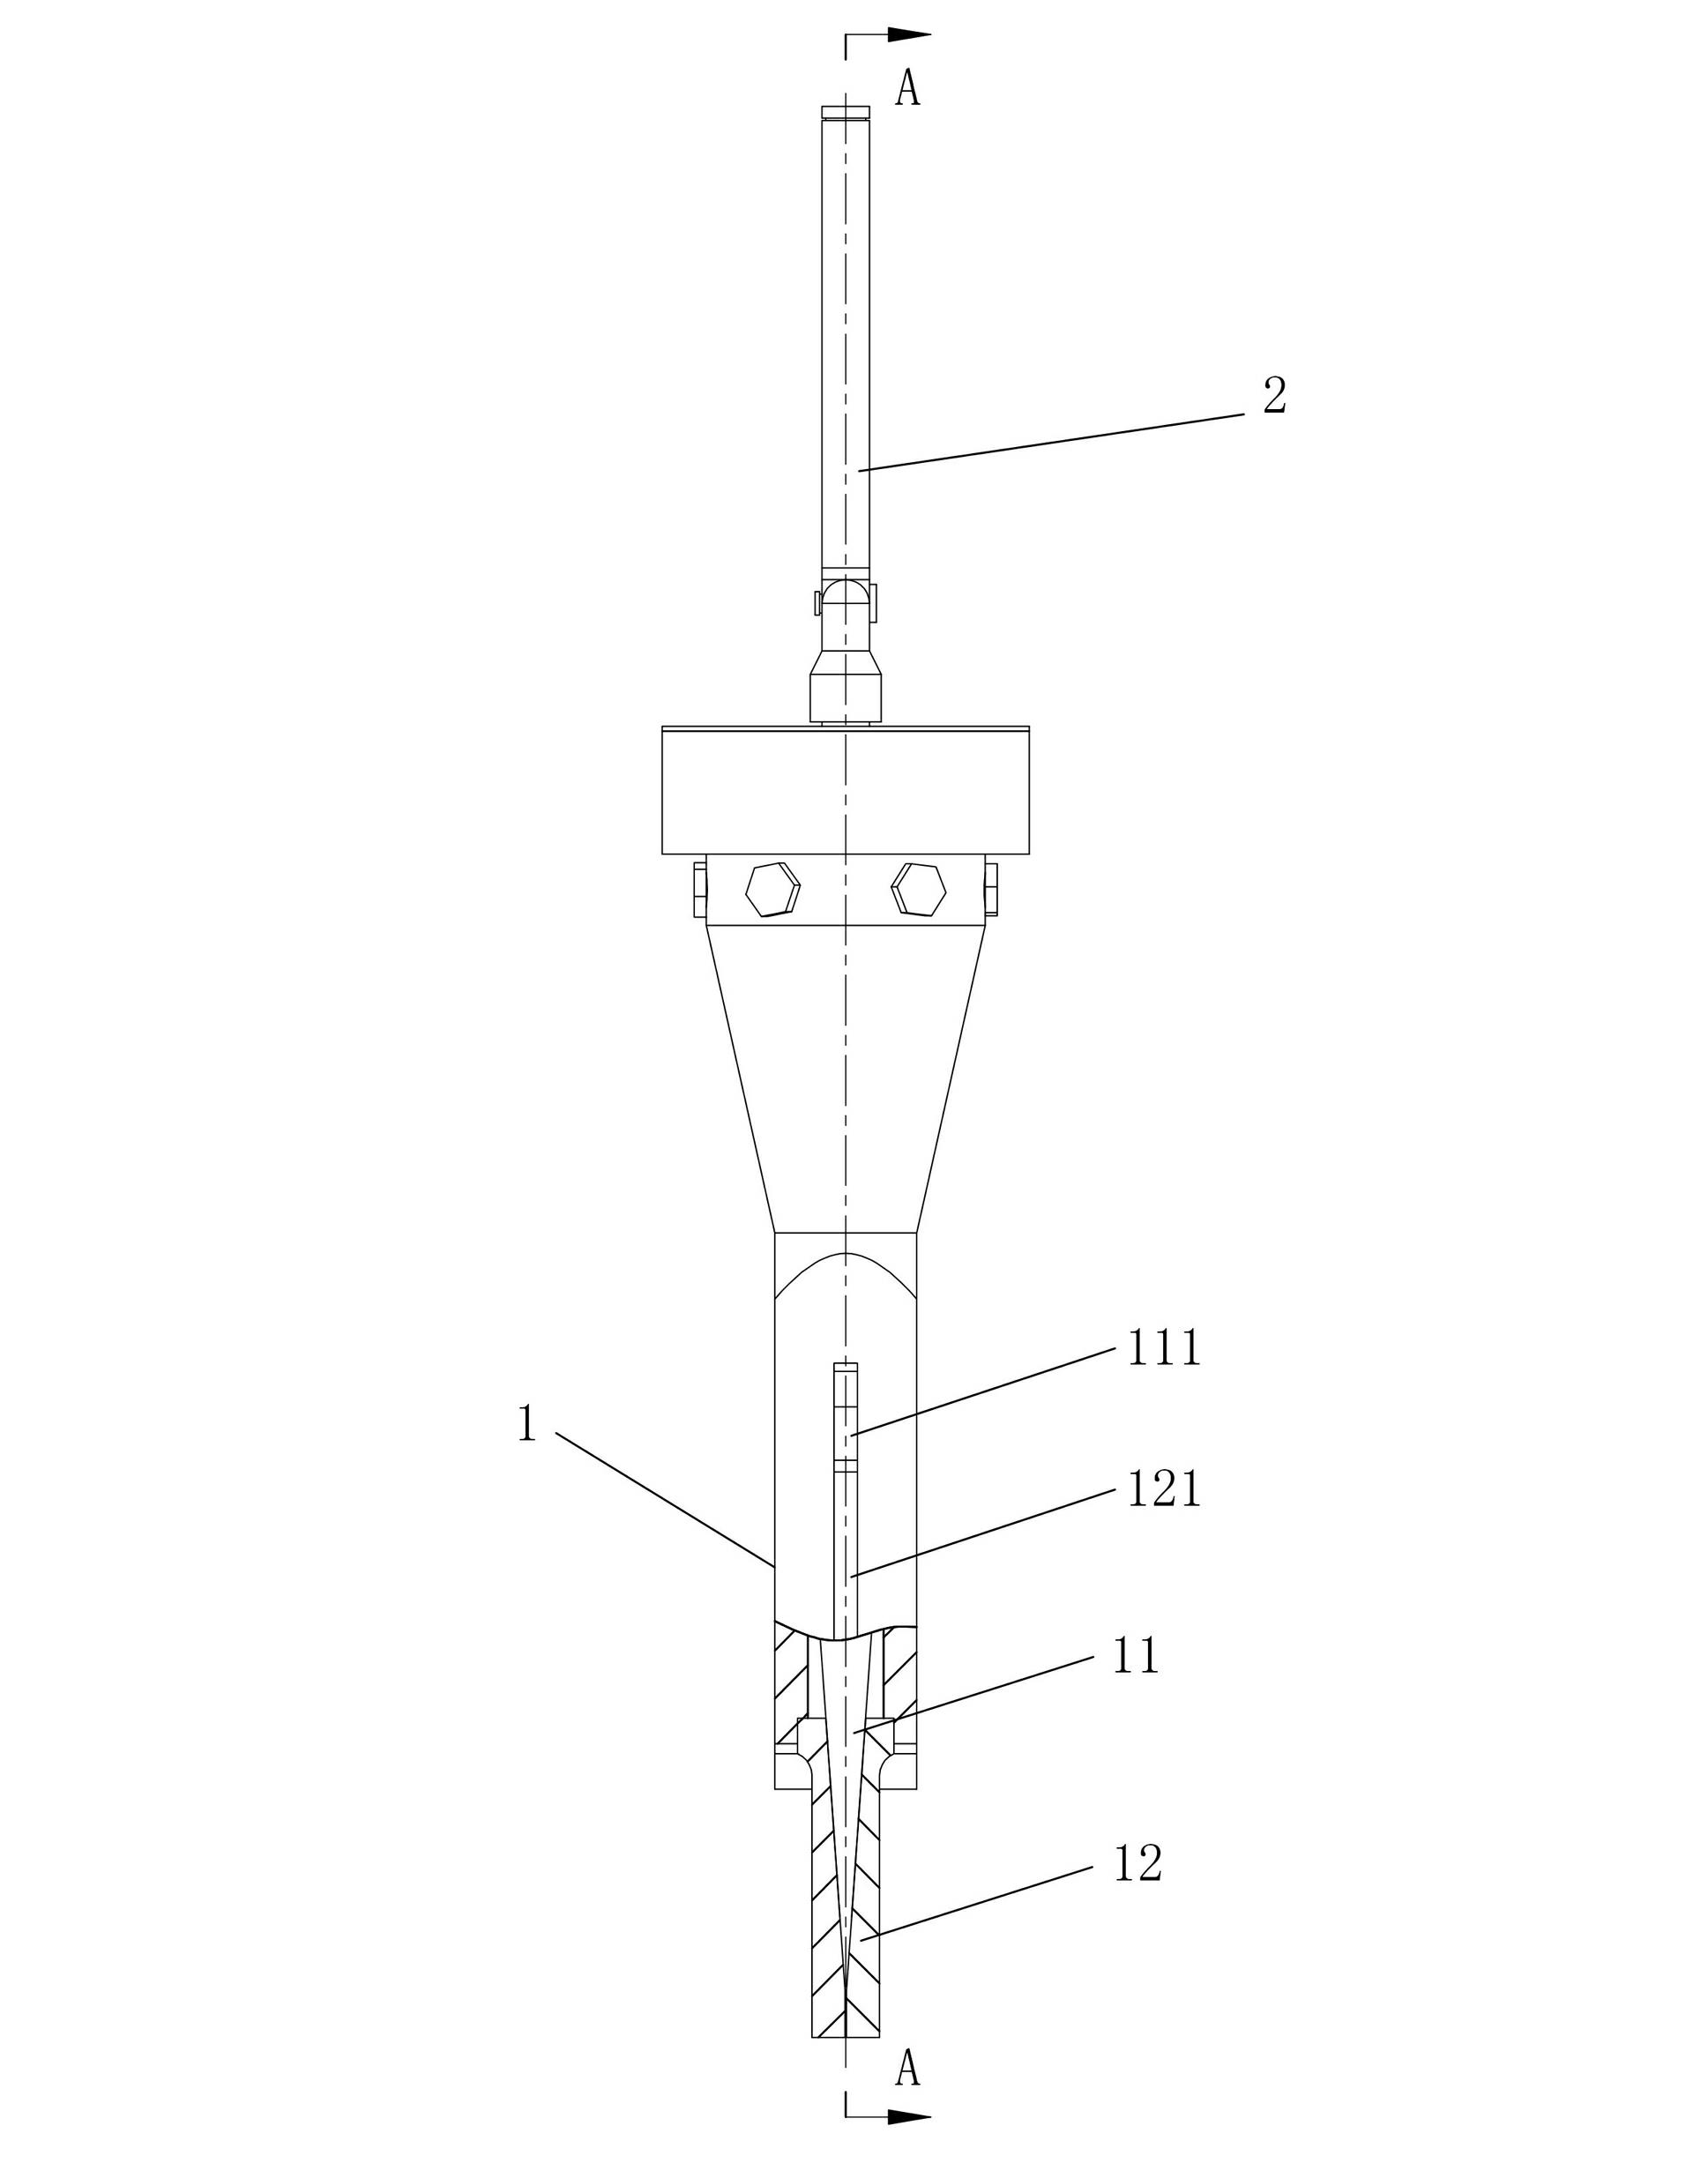 Manual splitter